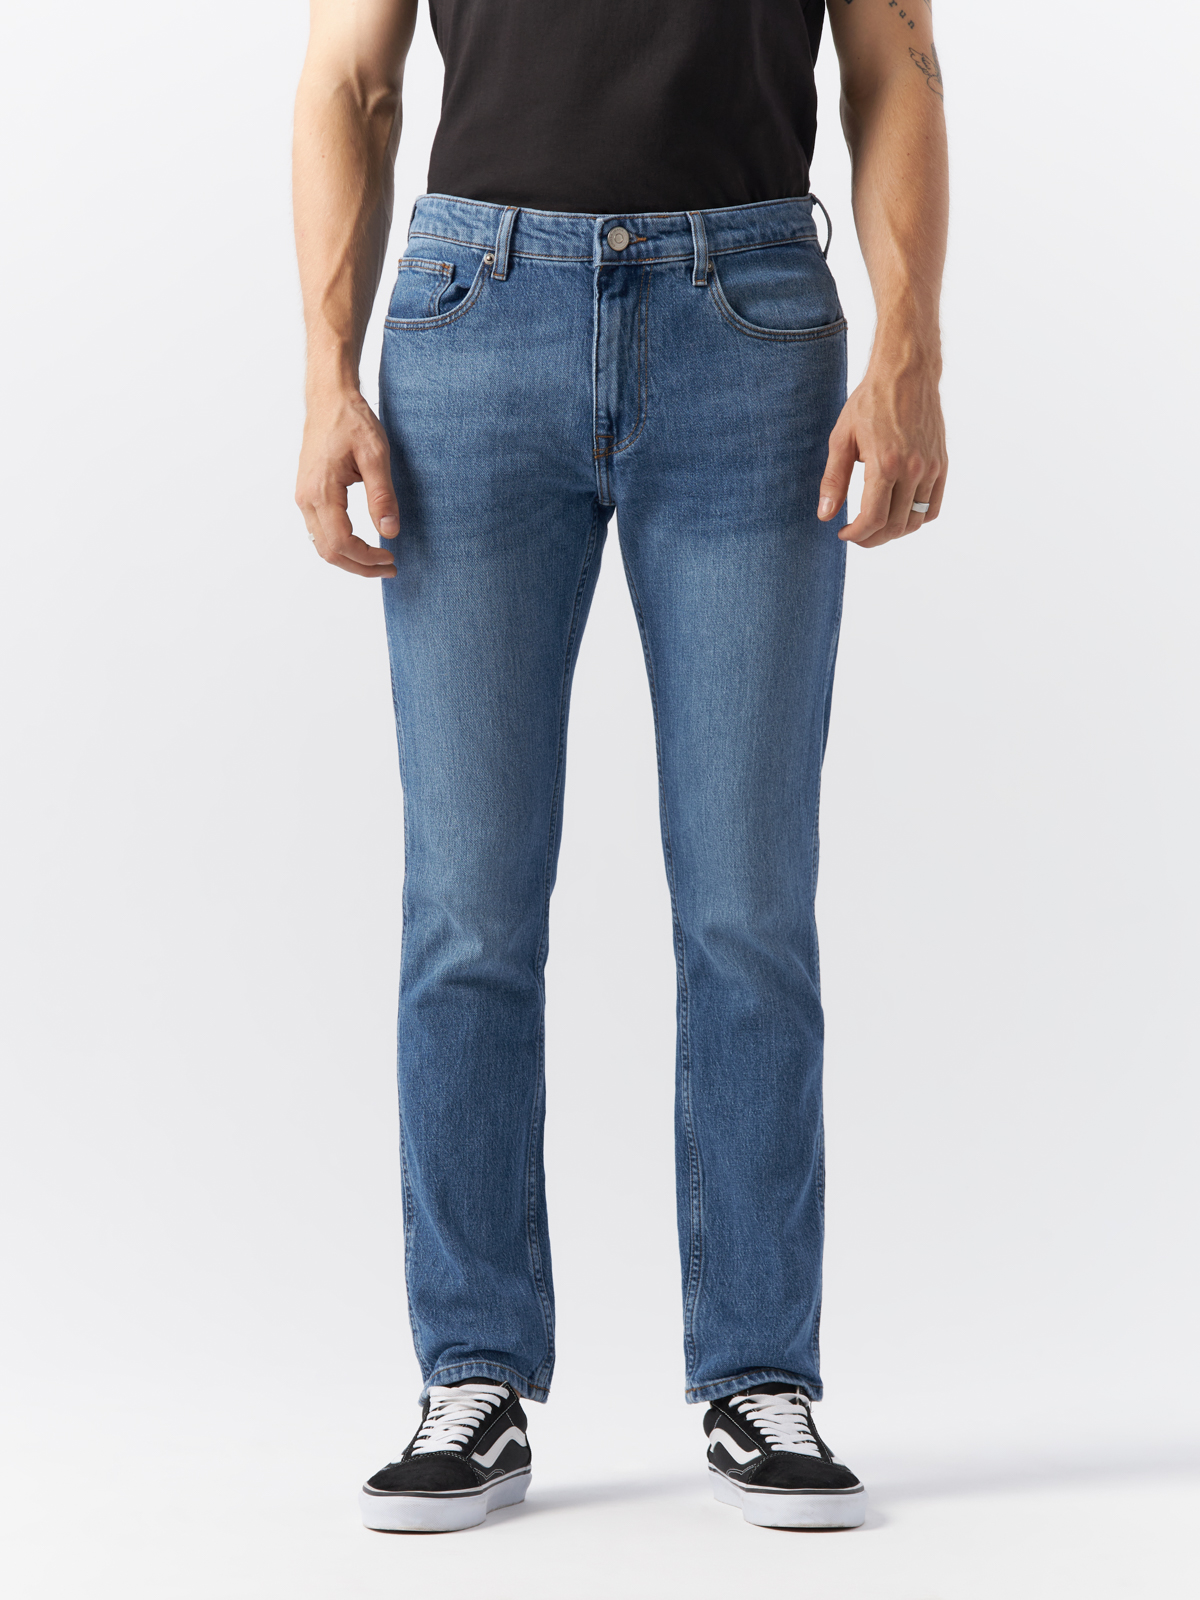 Джинсы Cross Jeans для мужчин, C 132-070, размер 33-32, синие